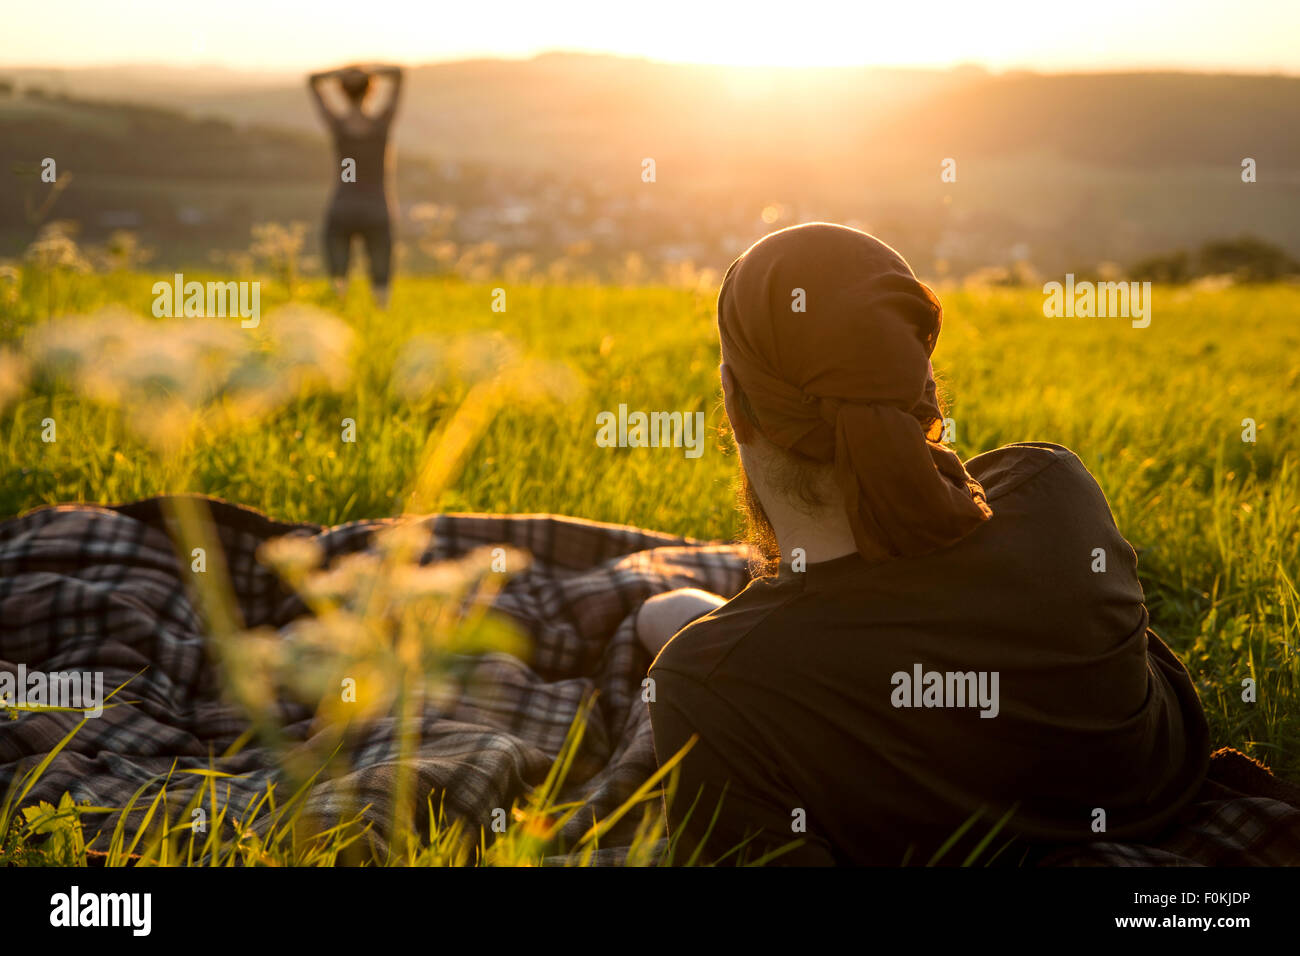 Germania, giovane su un prato a guardare per sunrise Foto Stock